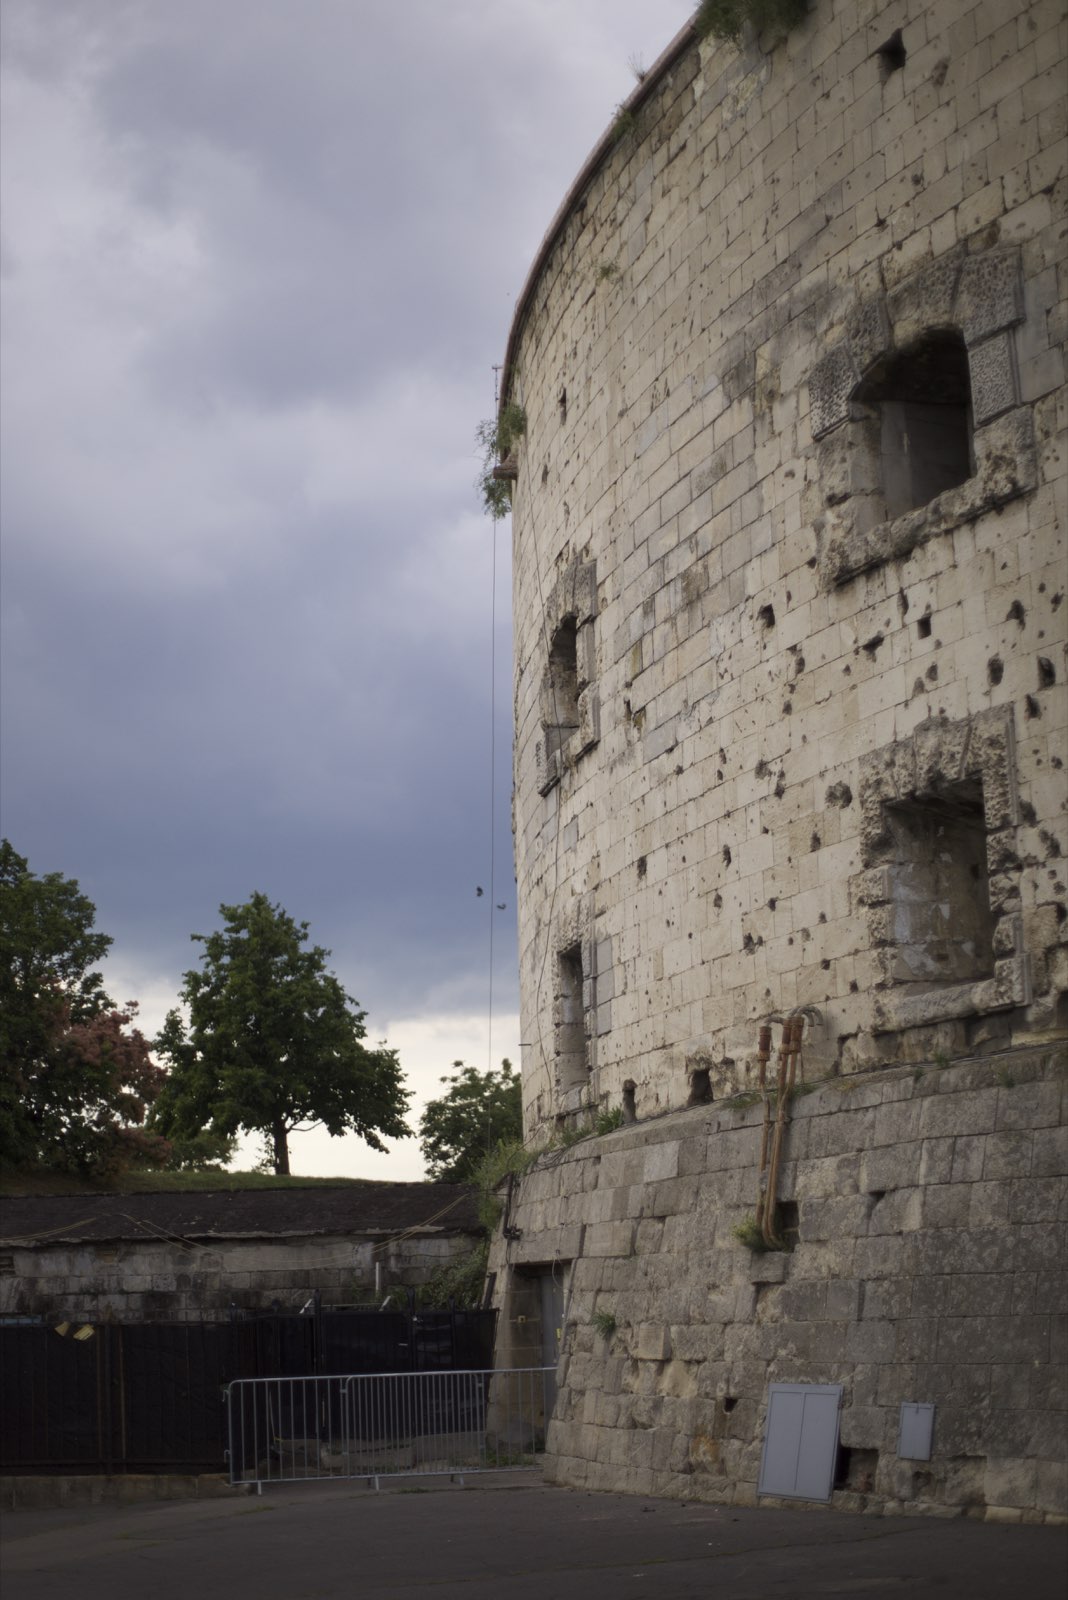 Citadel wall